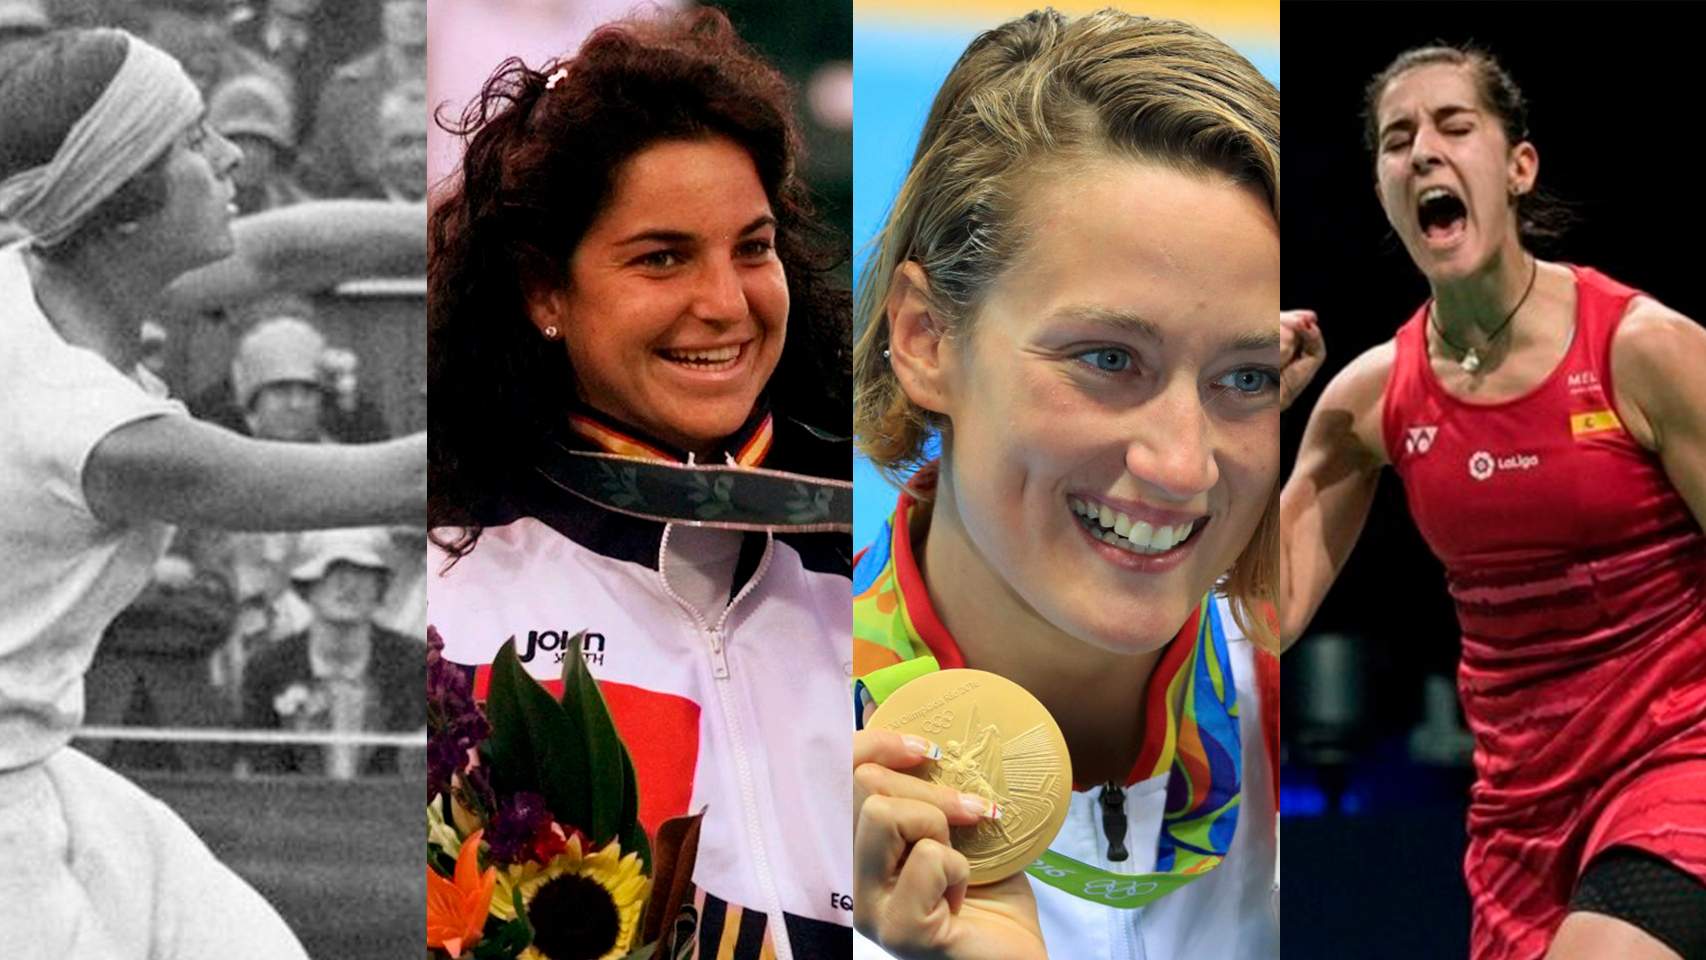 Día de la mujer: 14 mujeres que destacaron en sus deportes